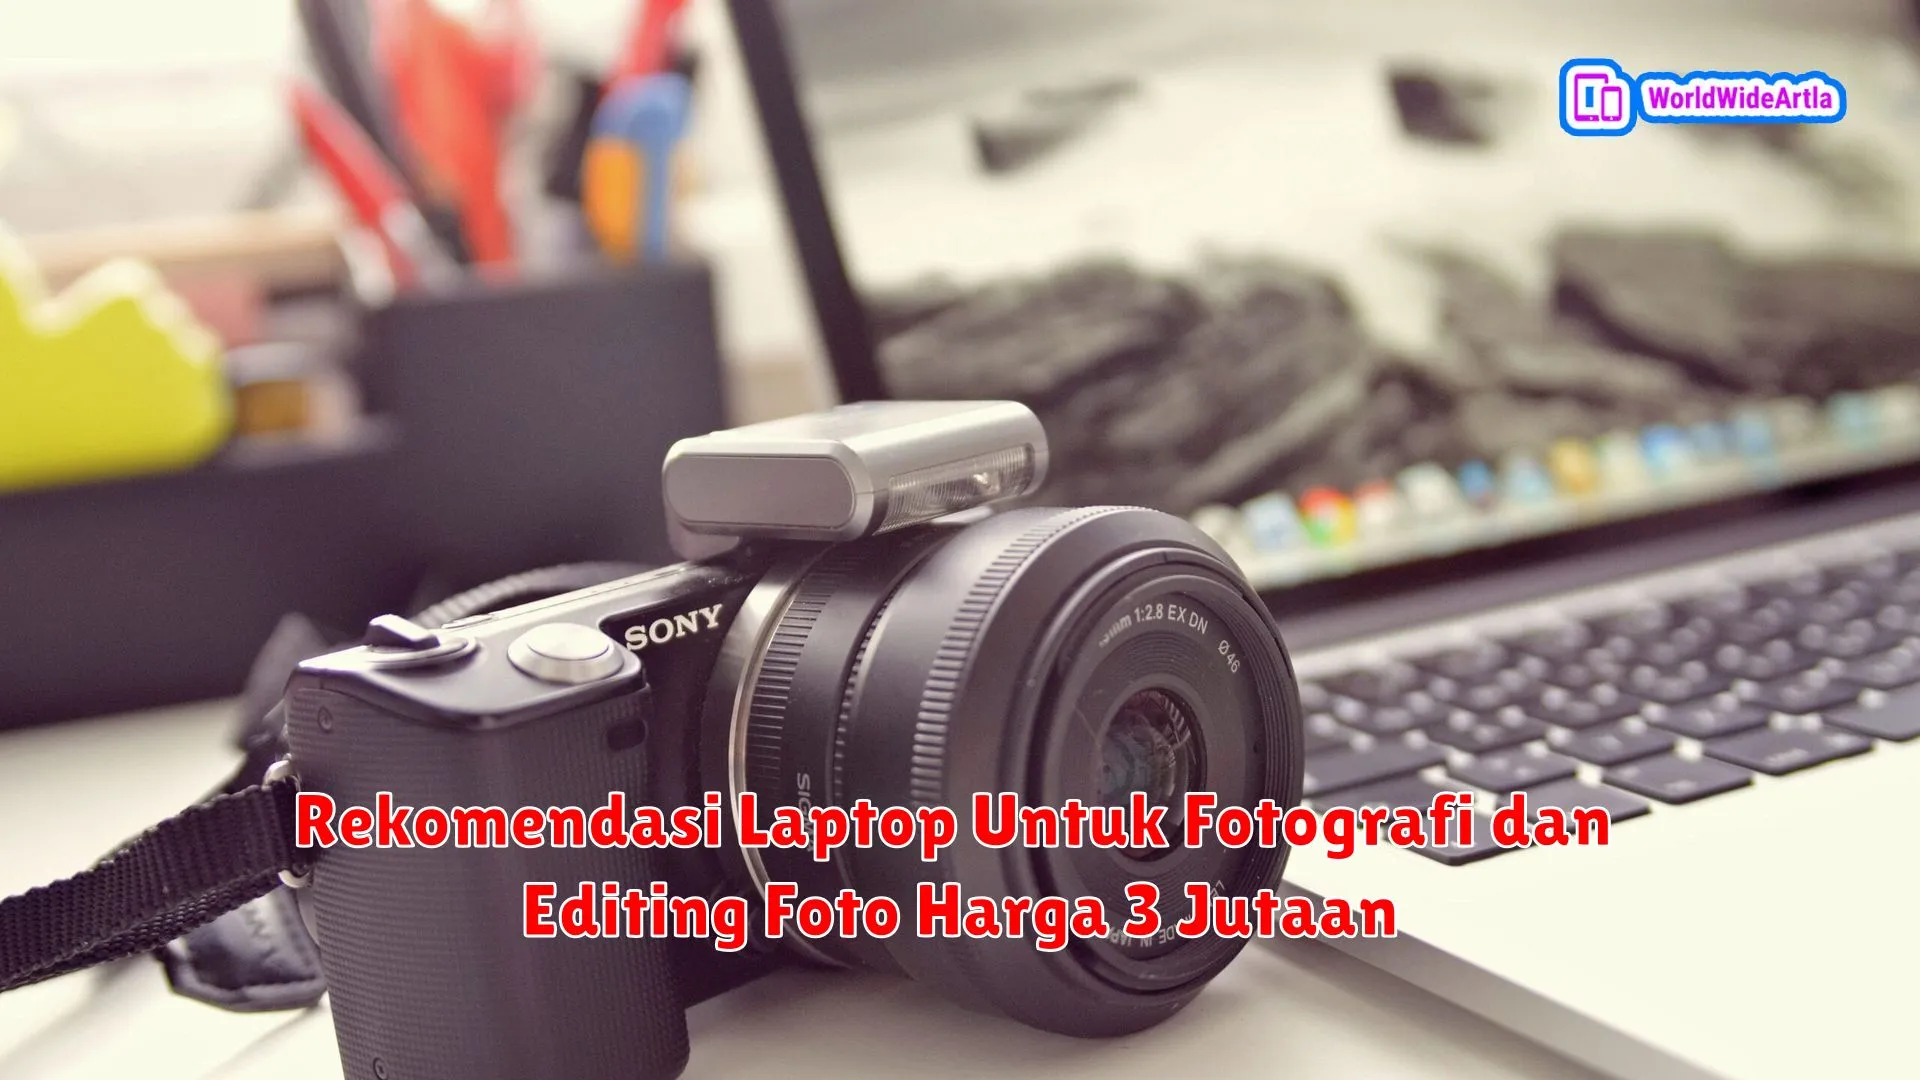 Rekomendasi Laptop Untuk Fotografi dan Editing Foto Harga 3 Jutaan